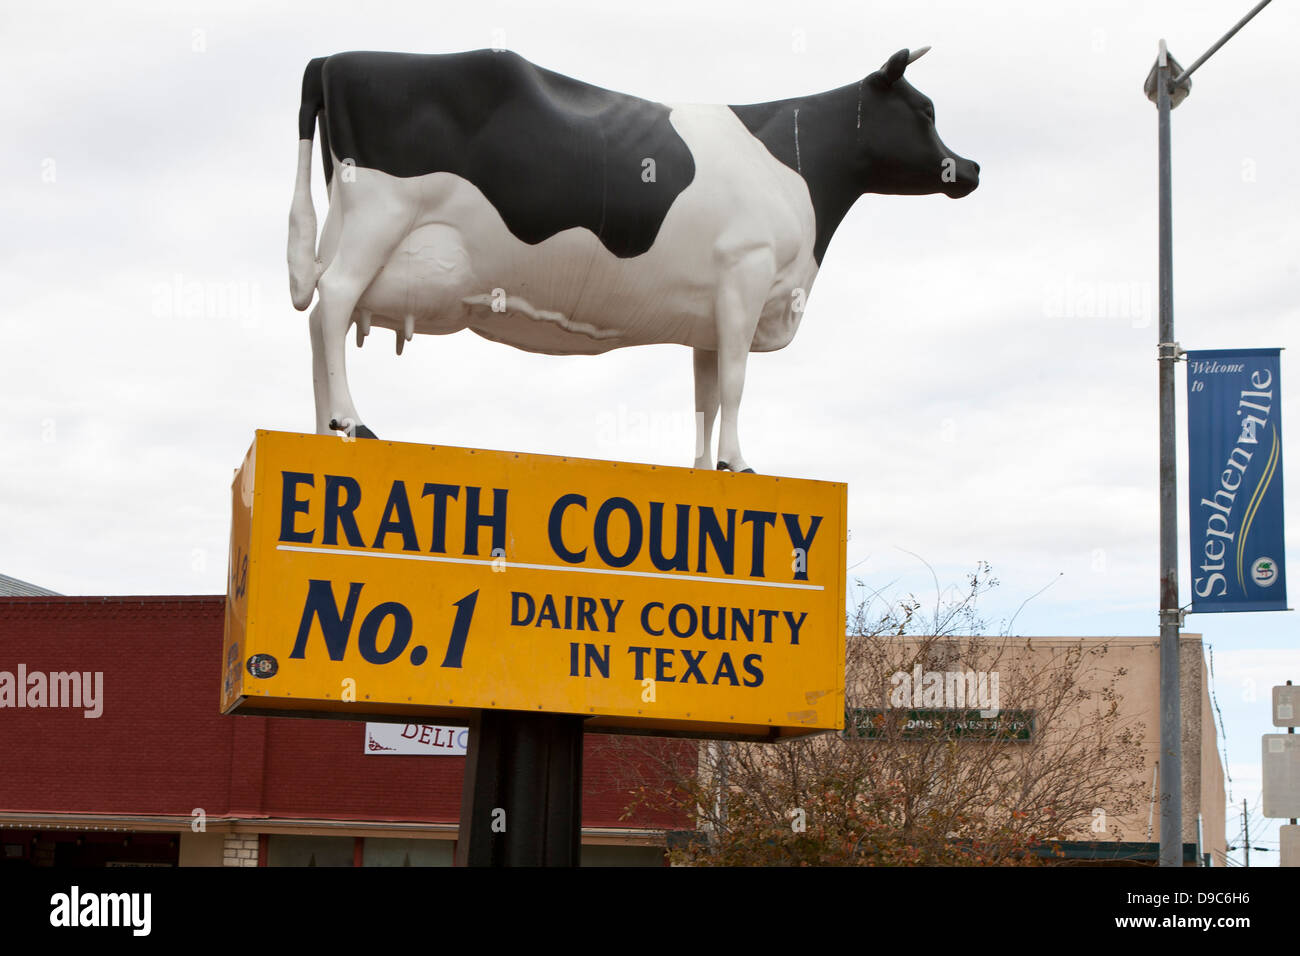 Kuh auf der Oberseite ein Zeichen benannt Erath County als die oberen Molkerei produziert County in Texas, Stephenville, Texas, Vereinigte Staaten von Stockfoto